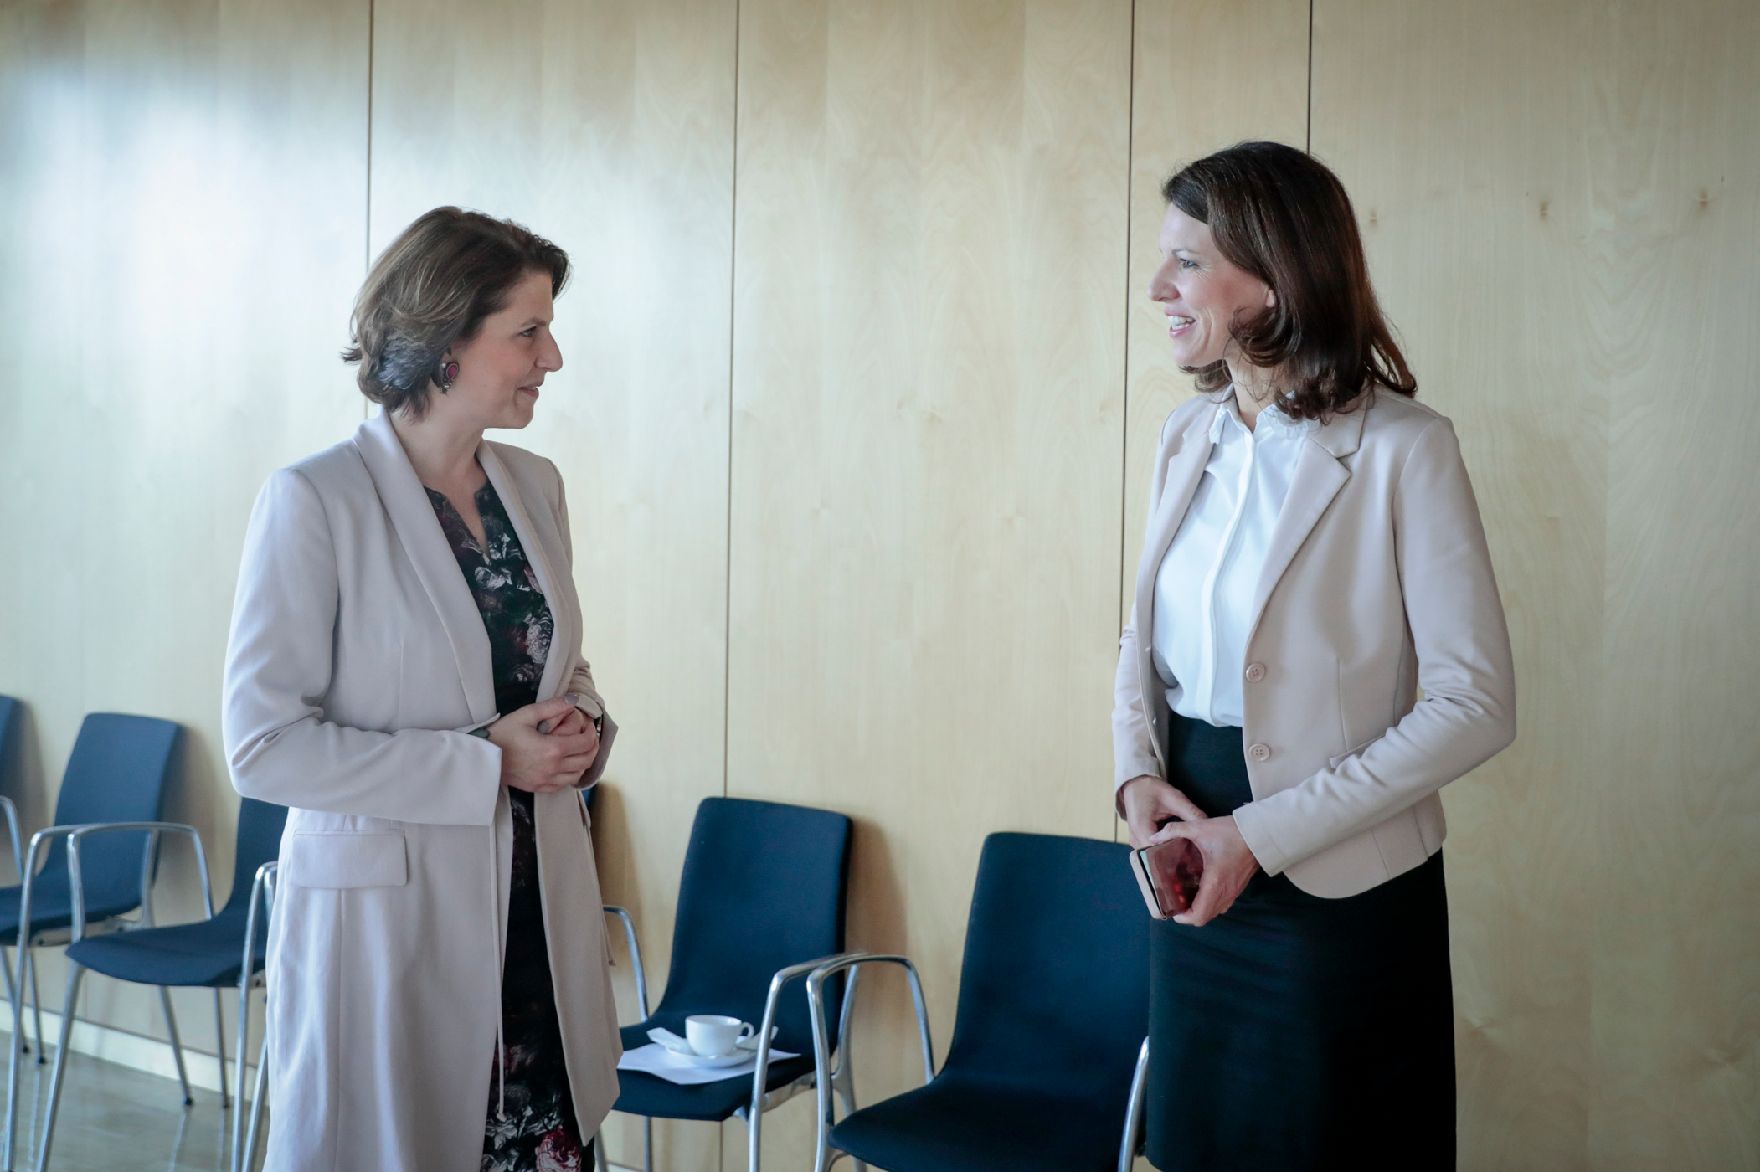 Am 30. Juni 2020 reiste Bundesministerin Karoline Edtstadler (l.) nach Berlin. Im Bild beim Arbeitsgespräch mit der Stellvertretenden Vorsitzenden der CDU/CSU-Bundestagsfraktion Katja Leikert (r.).